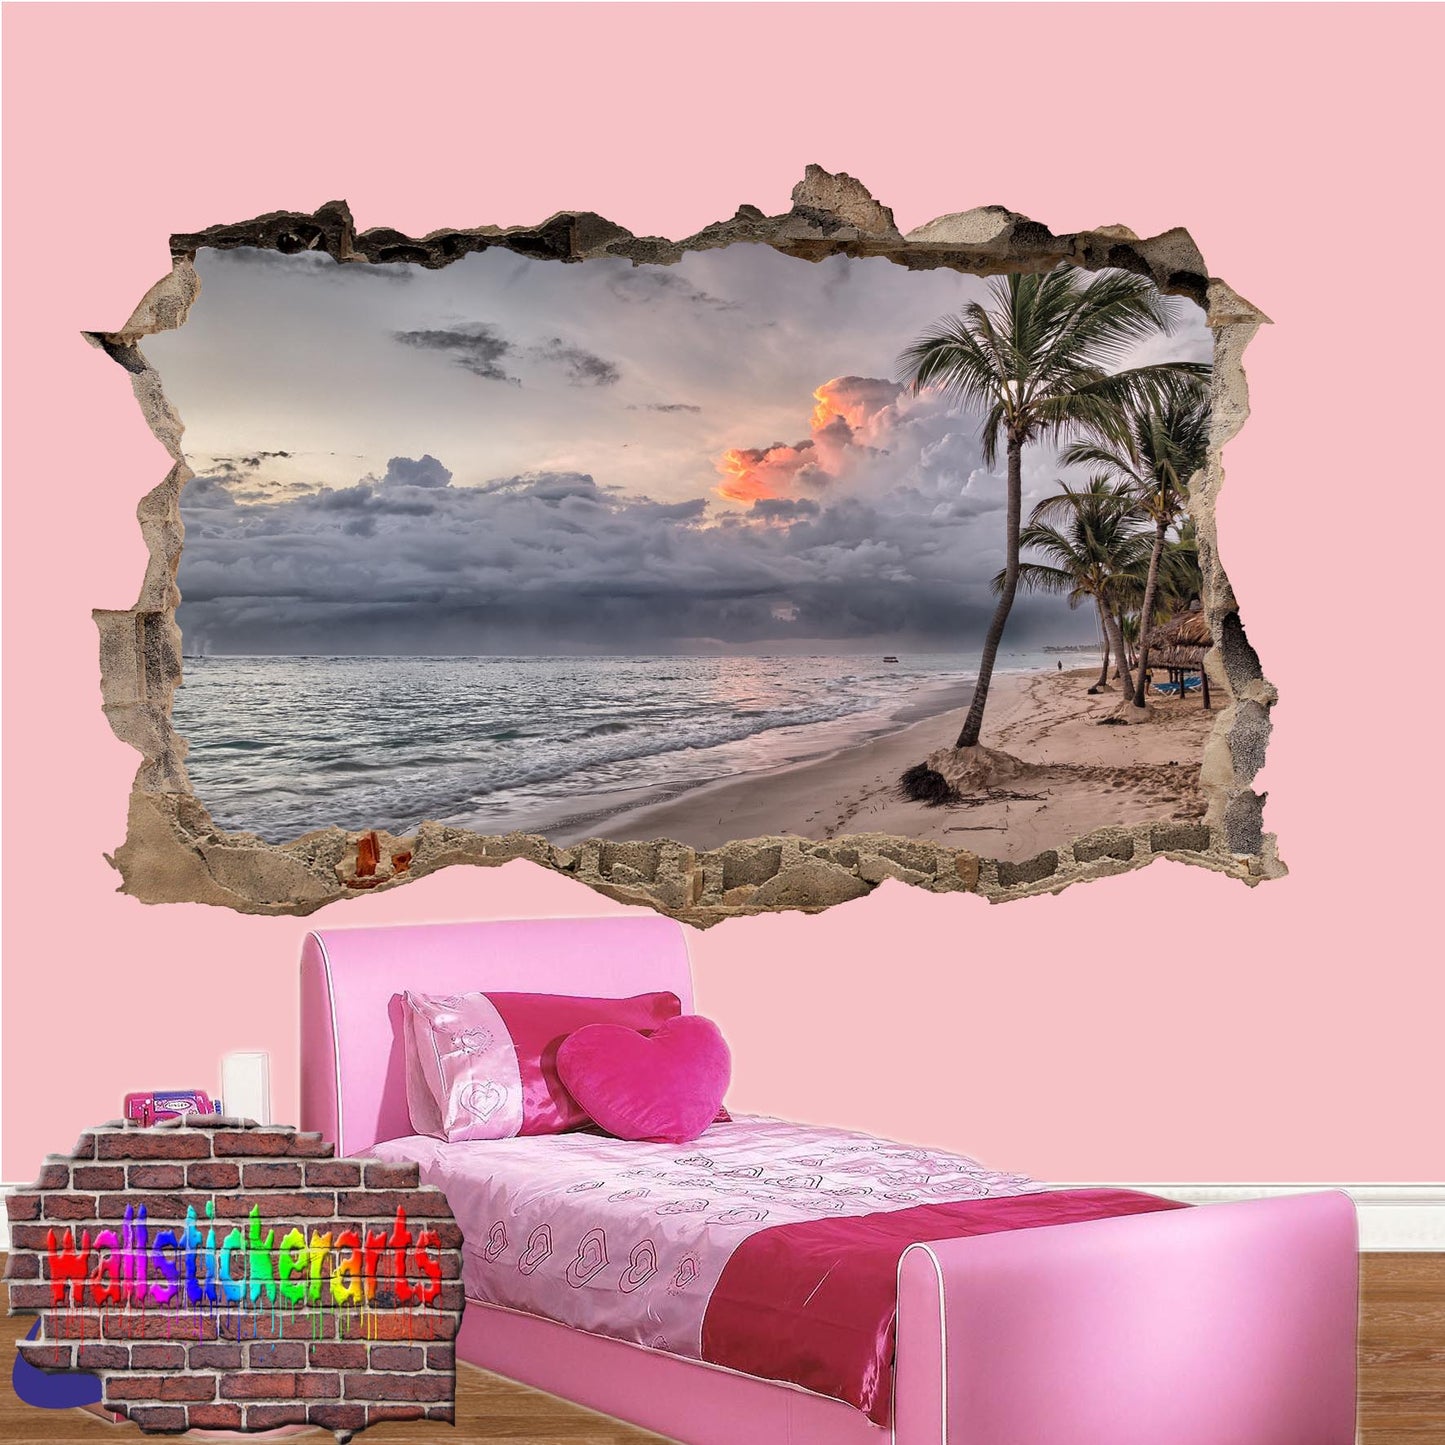 Tropical Beach Sunset 3d Art Wall Sticker Mural Room Office Shop Home Decor Decal ZL0